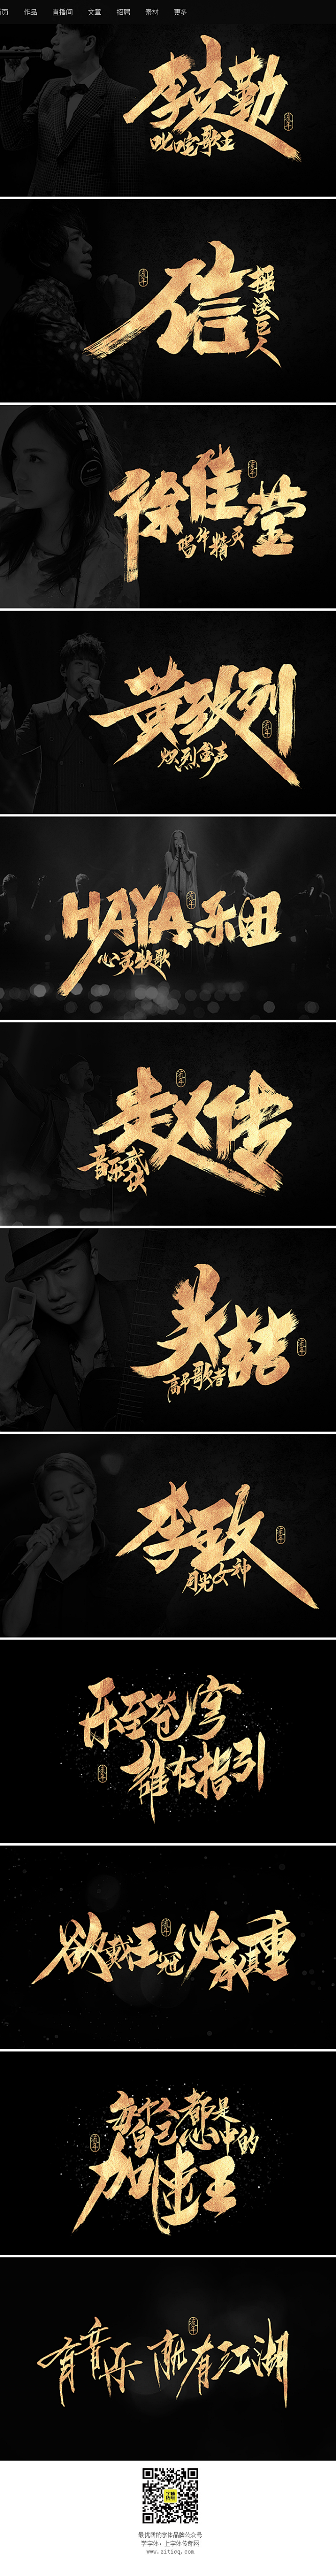 我是歌手_字体传奇网-中国首个字体品牌设...